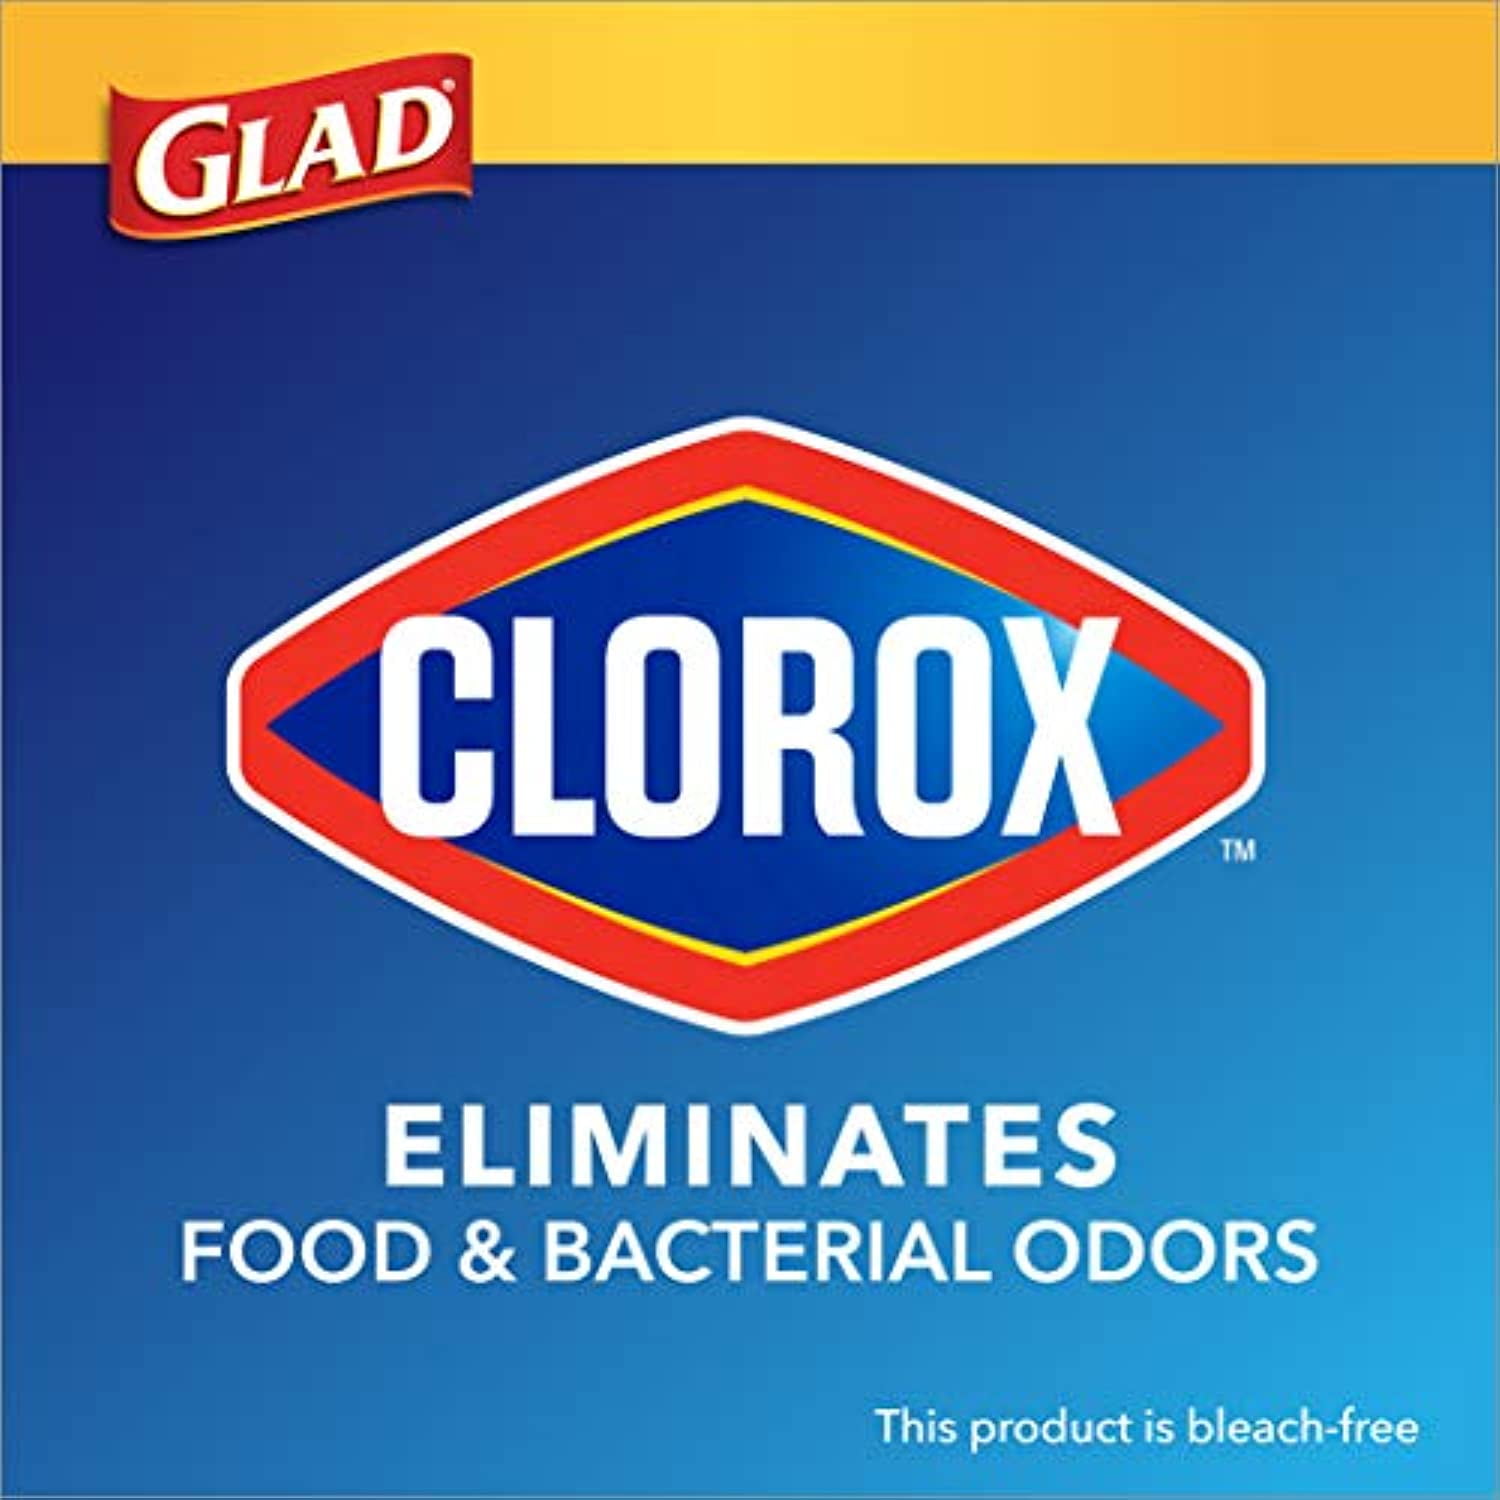 Clorox Professional 78543 Glad® Clear Recycling Tall Kitchen Trash